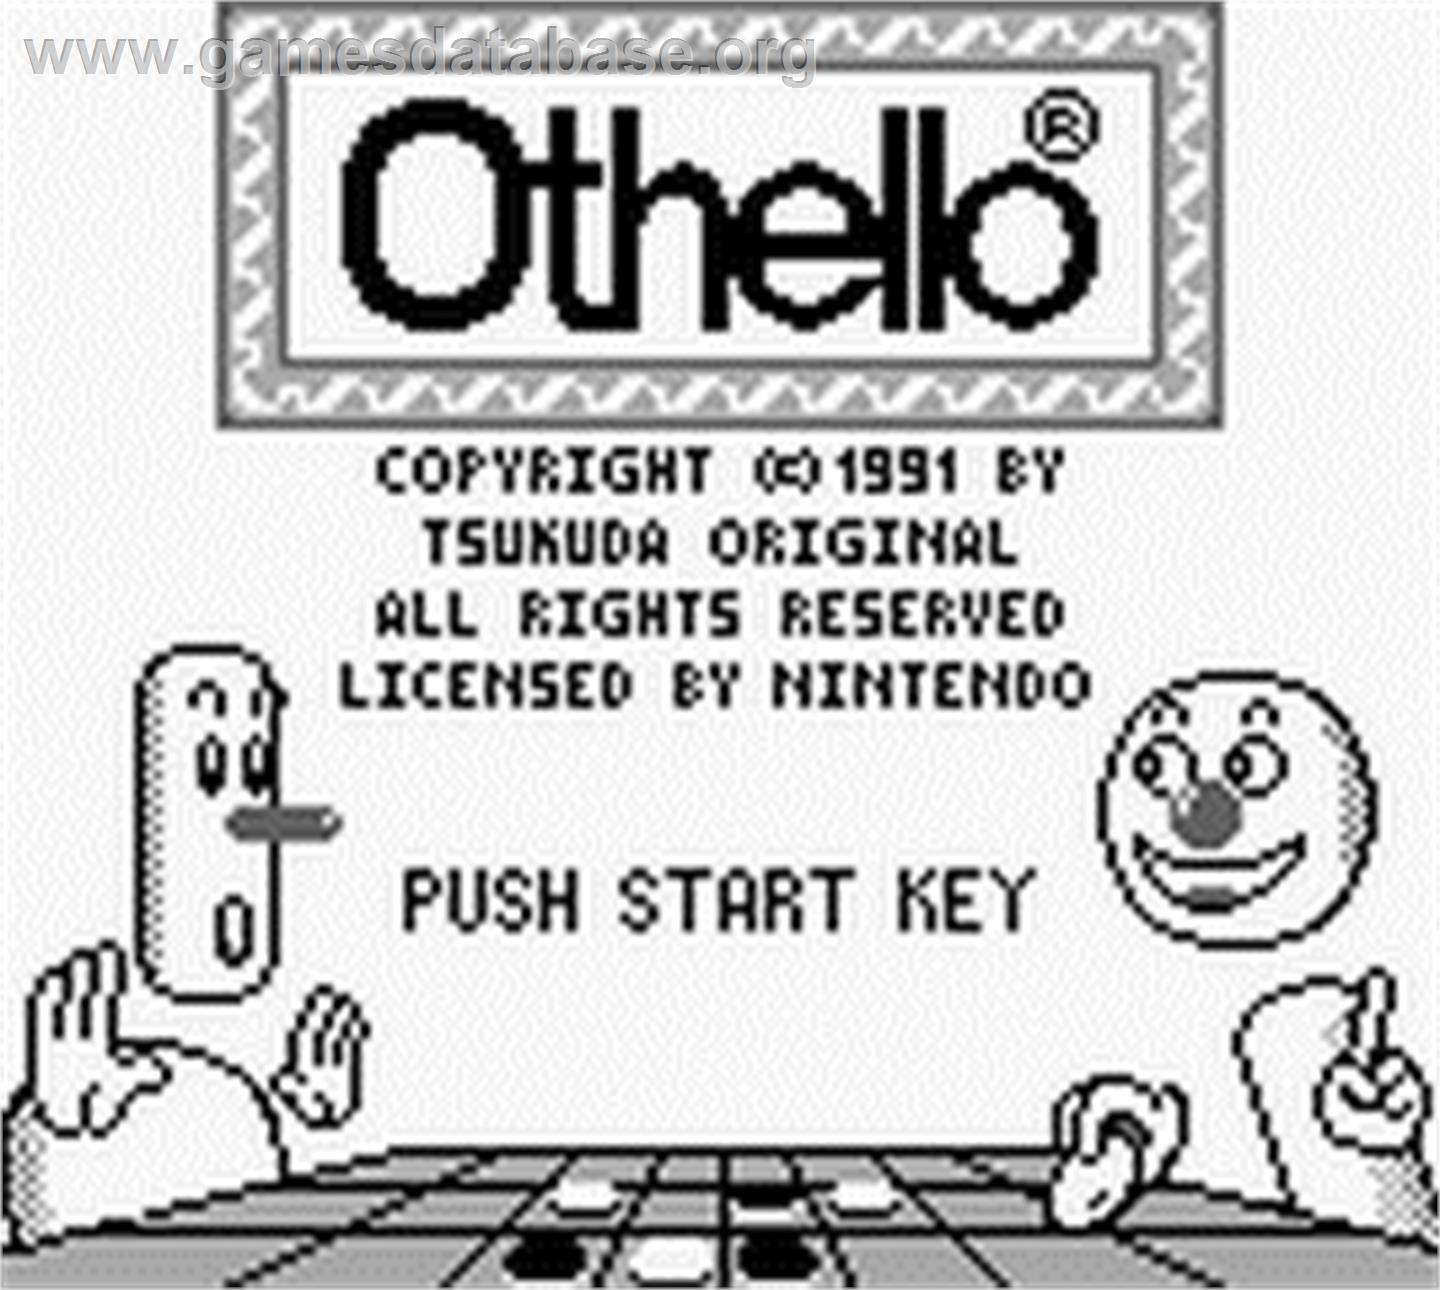 Othello - Nintendo Game Boy - Artwork - Title Screen